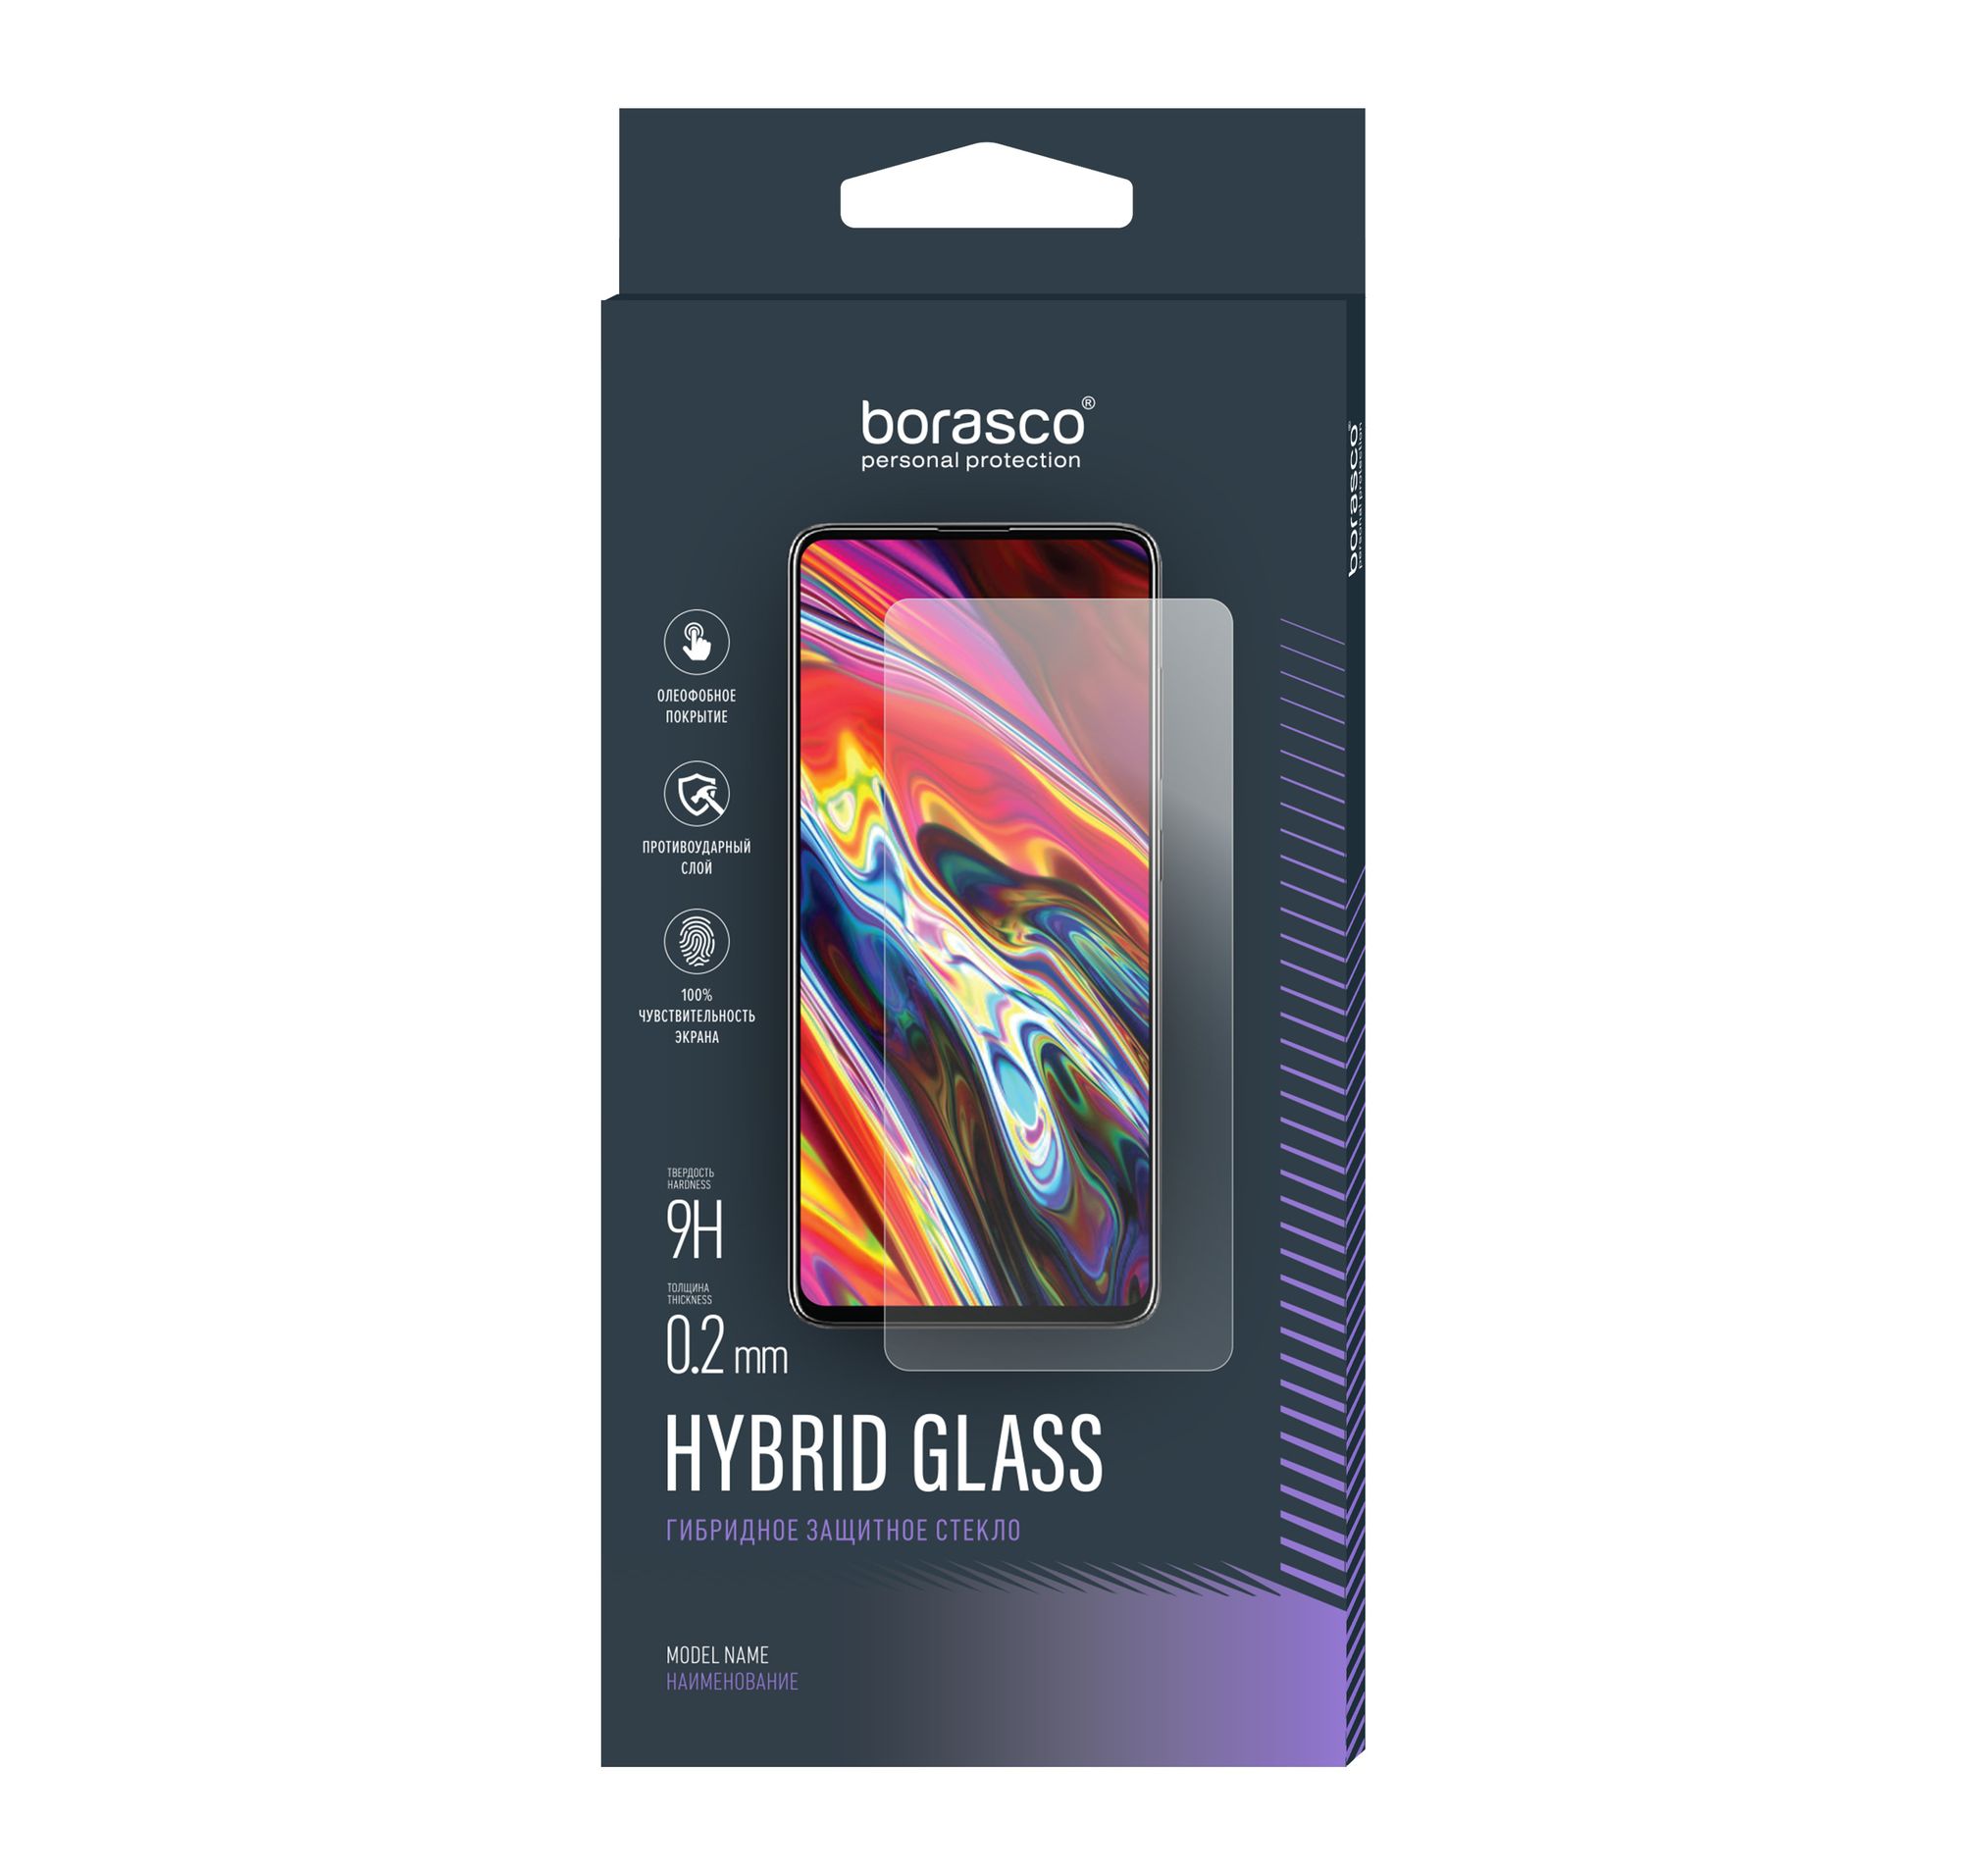 Стекло защитное Hybrid Glass VSP 0,26 мм для Huawei P9 Lite 100% оригинальный аккумулятор hb366481ecw для телефона huawei p9 p9 lite honor 8 p10 lite y6 ii p8 lite 2017 p20 lite ascend p9 инструменты